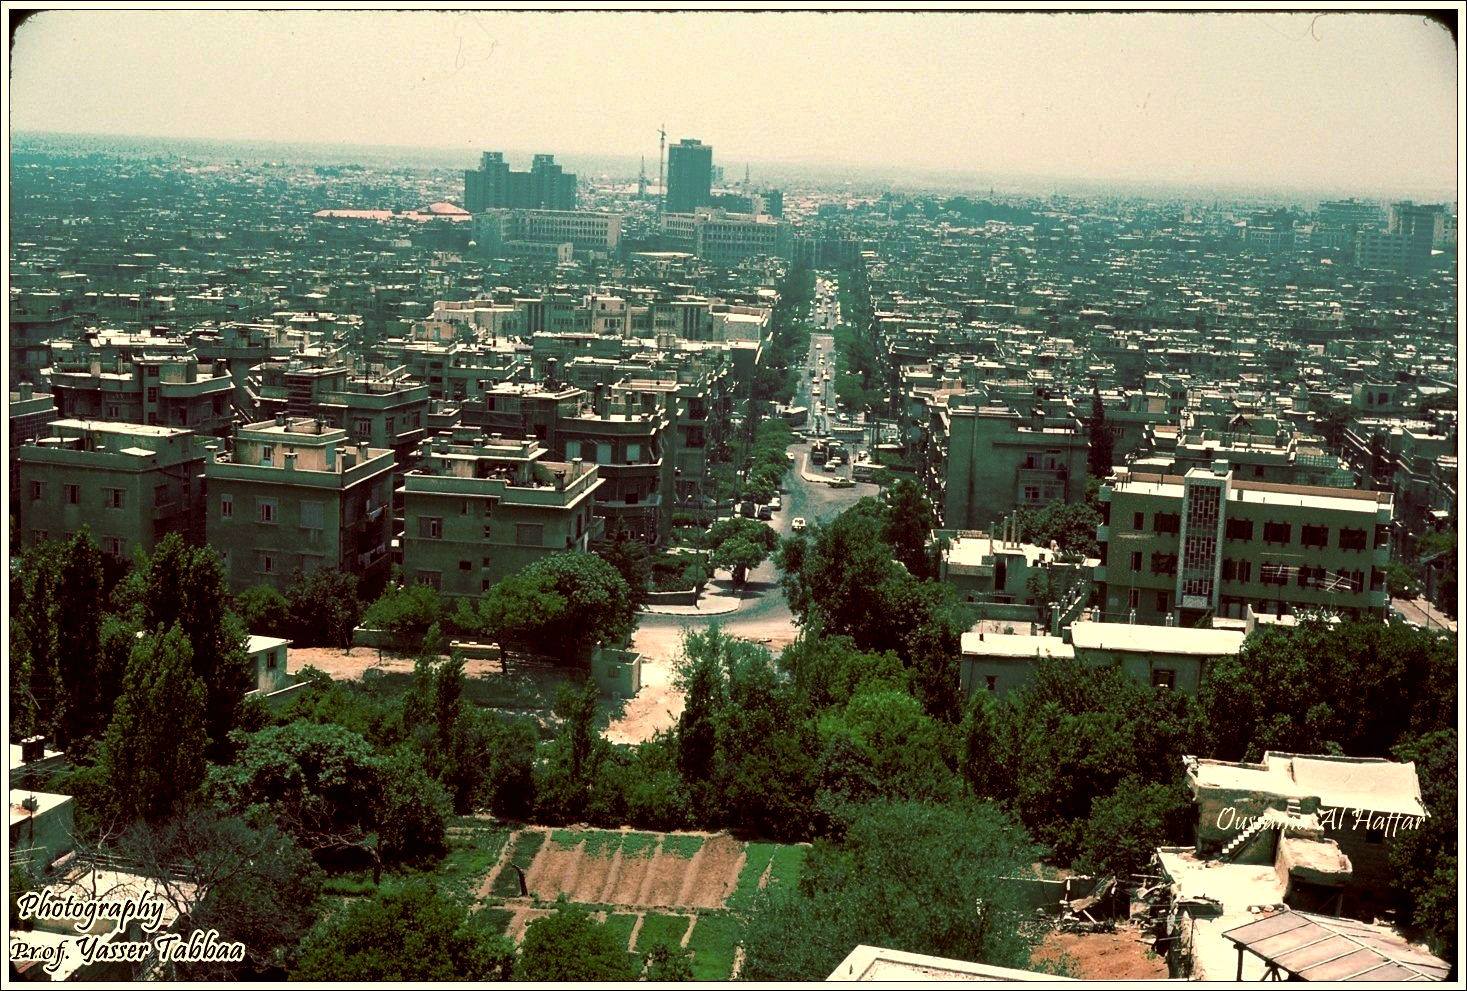 التاريخ السوري المعاصر - دمشق من مئذنة مسجد الشيخ محي الدين عام 1983